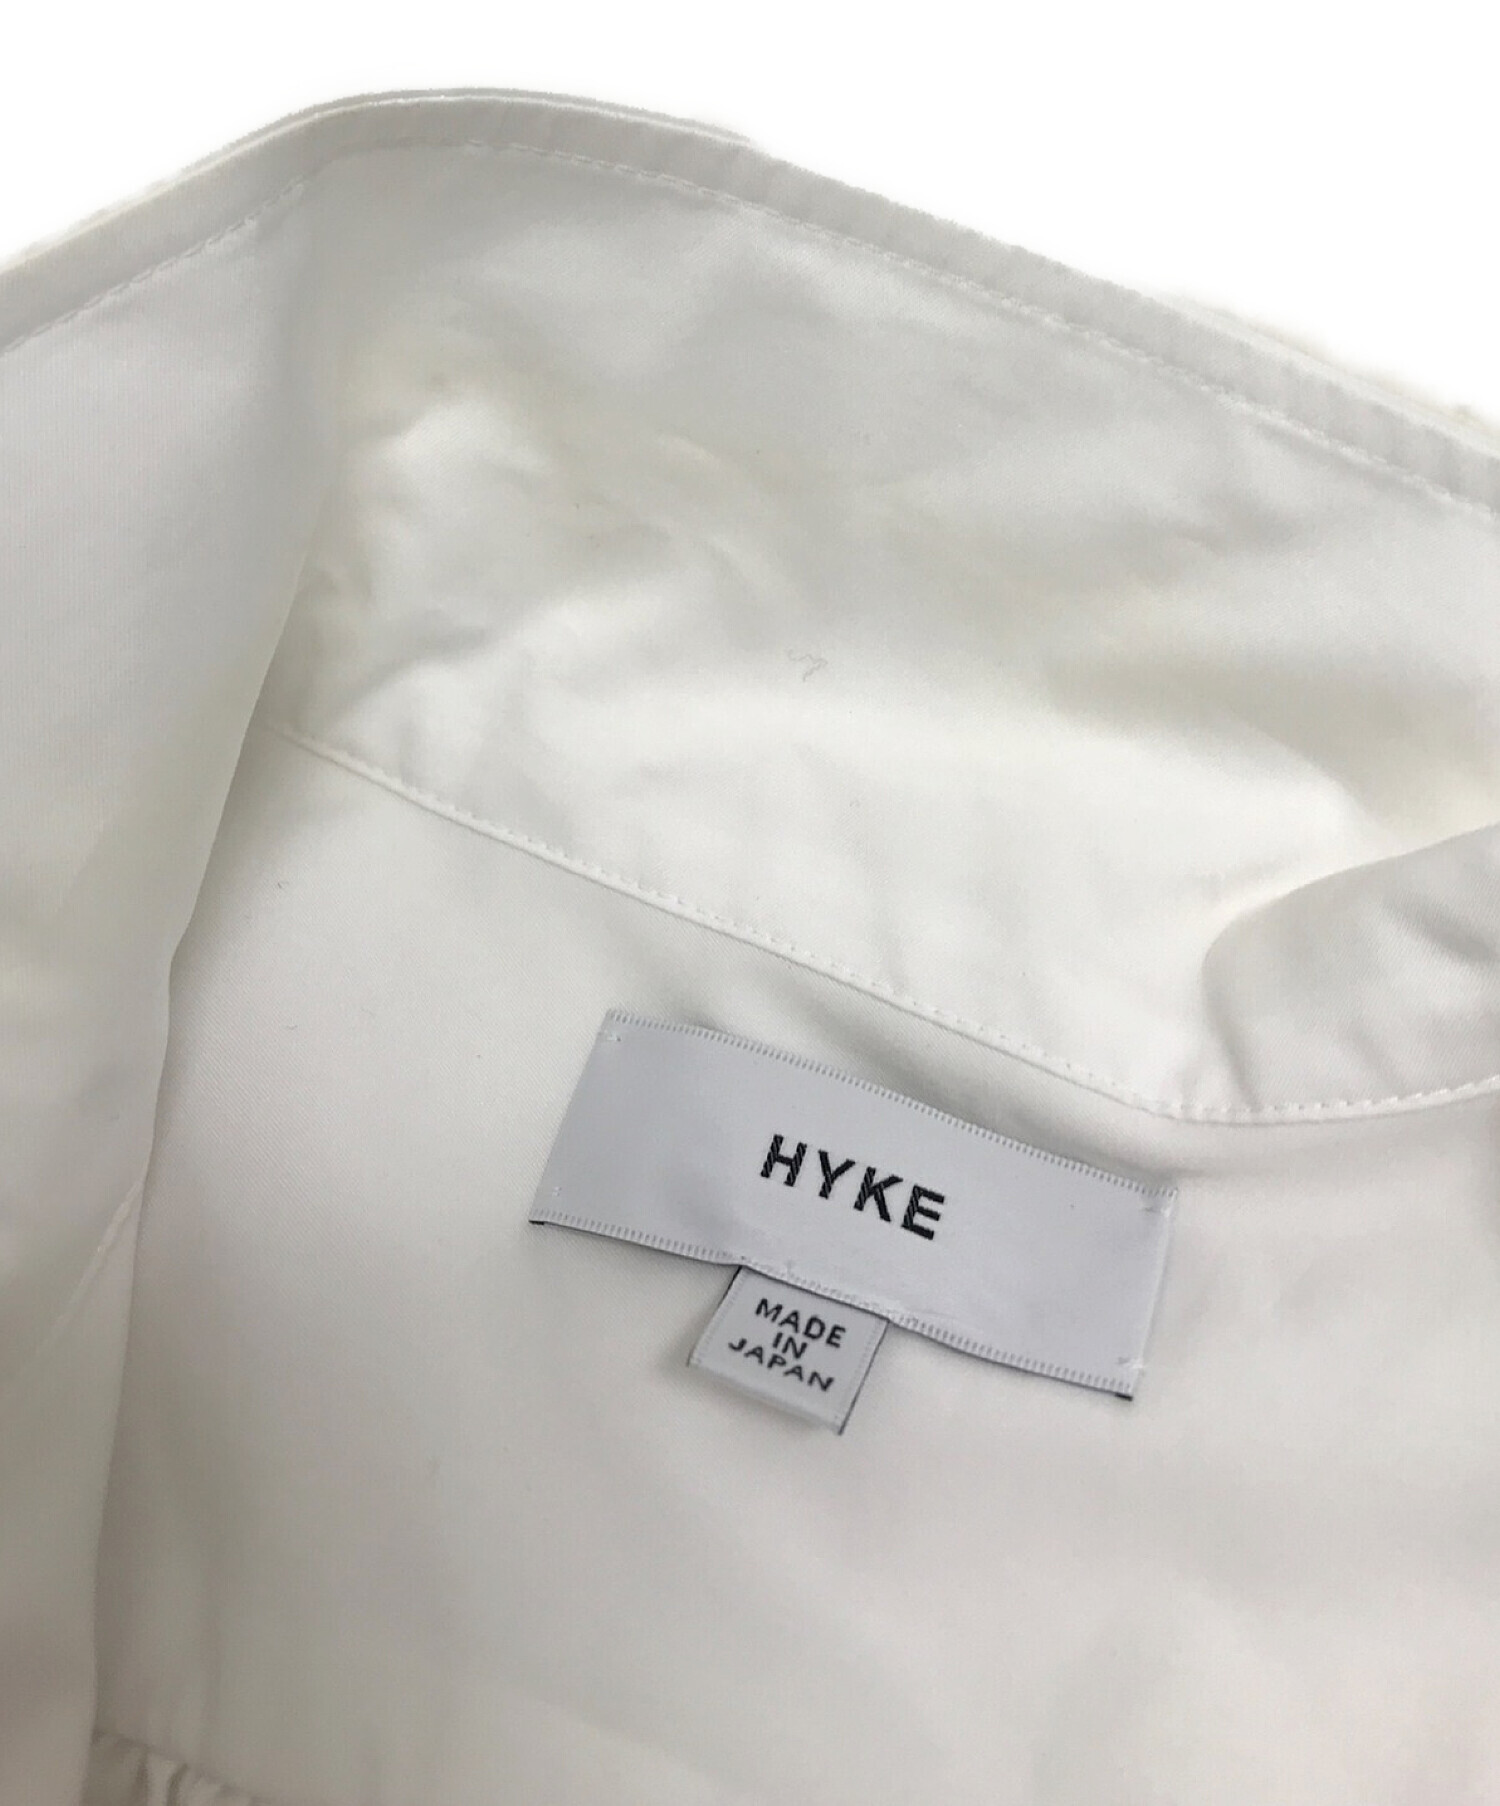 HYKE (ハイク) コットンストレッチ サイドリボン ノースリーブ ミリタリーシャツ ホワイト サイズ:下記参照